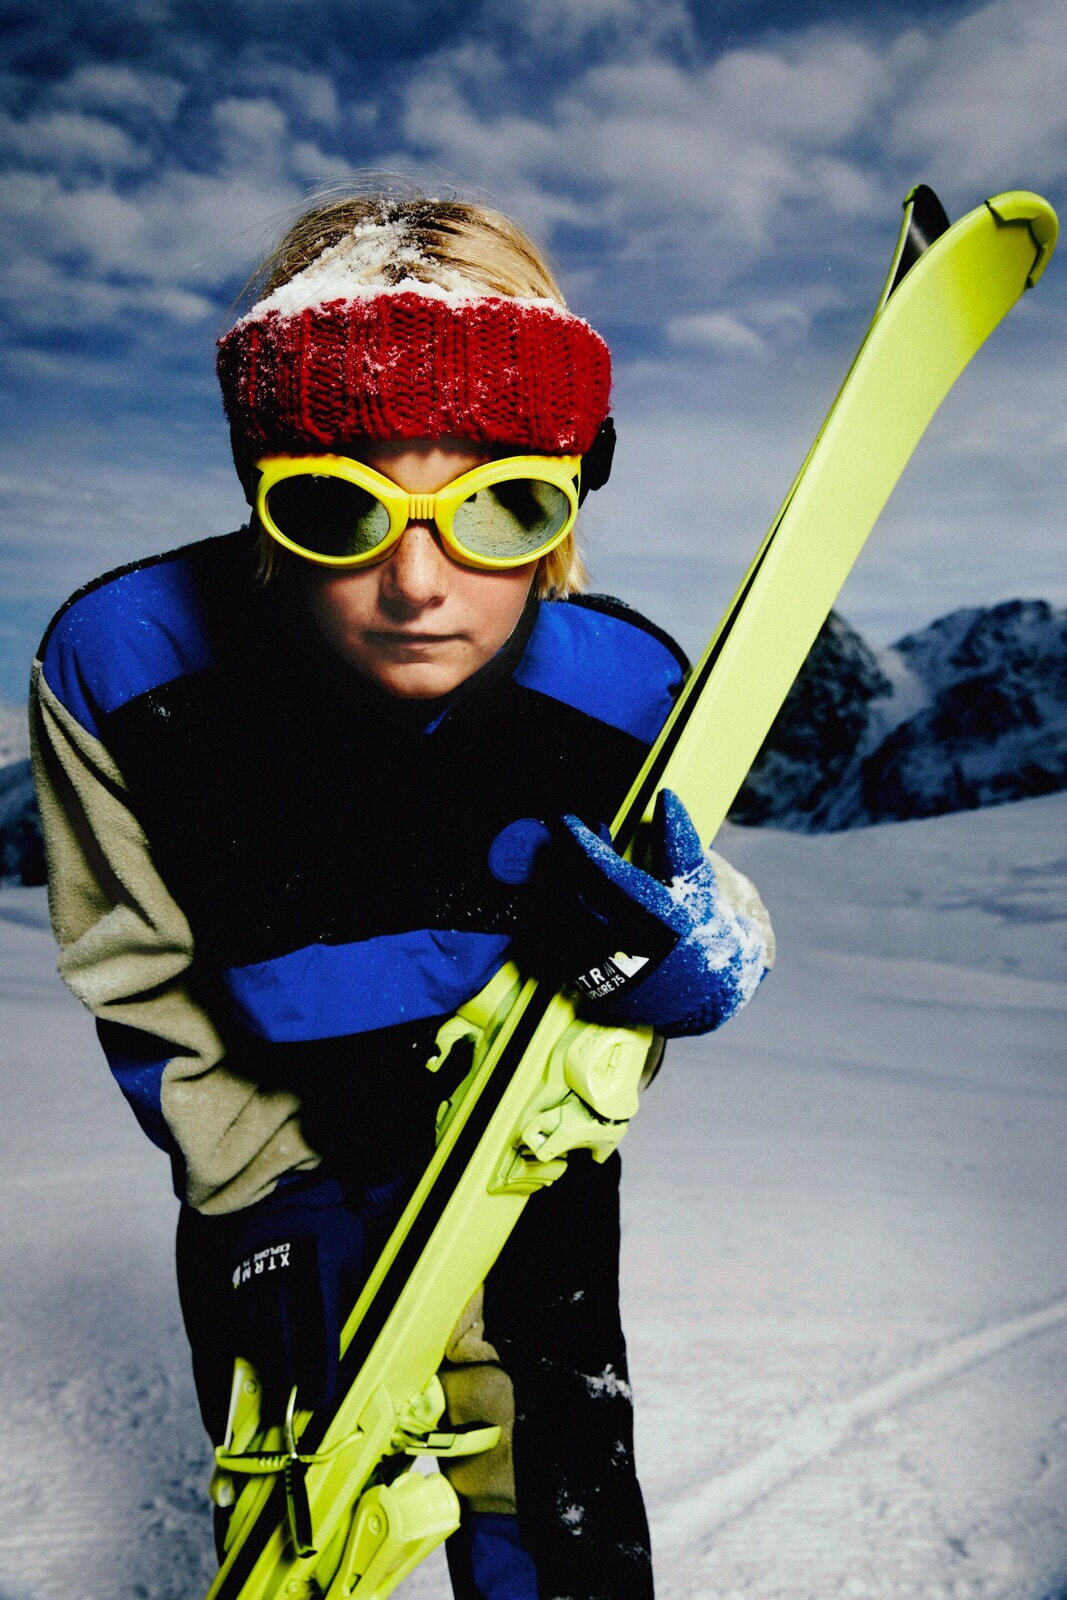 Перчатки из поларфлиса — ski collection ZARA